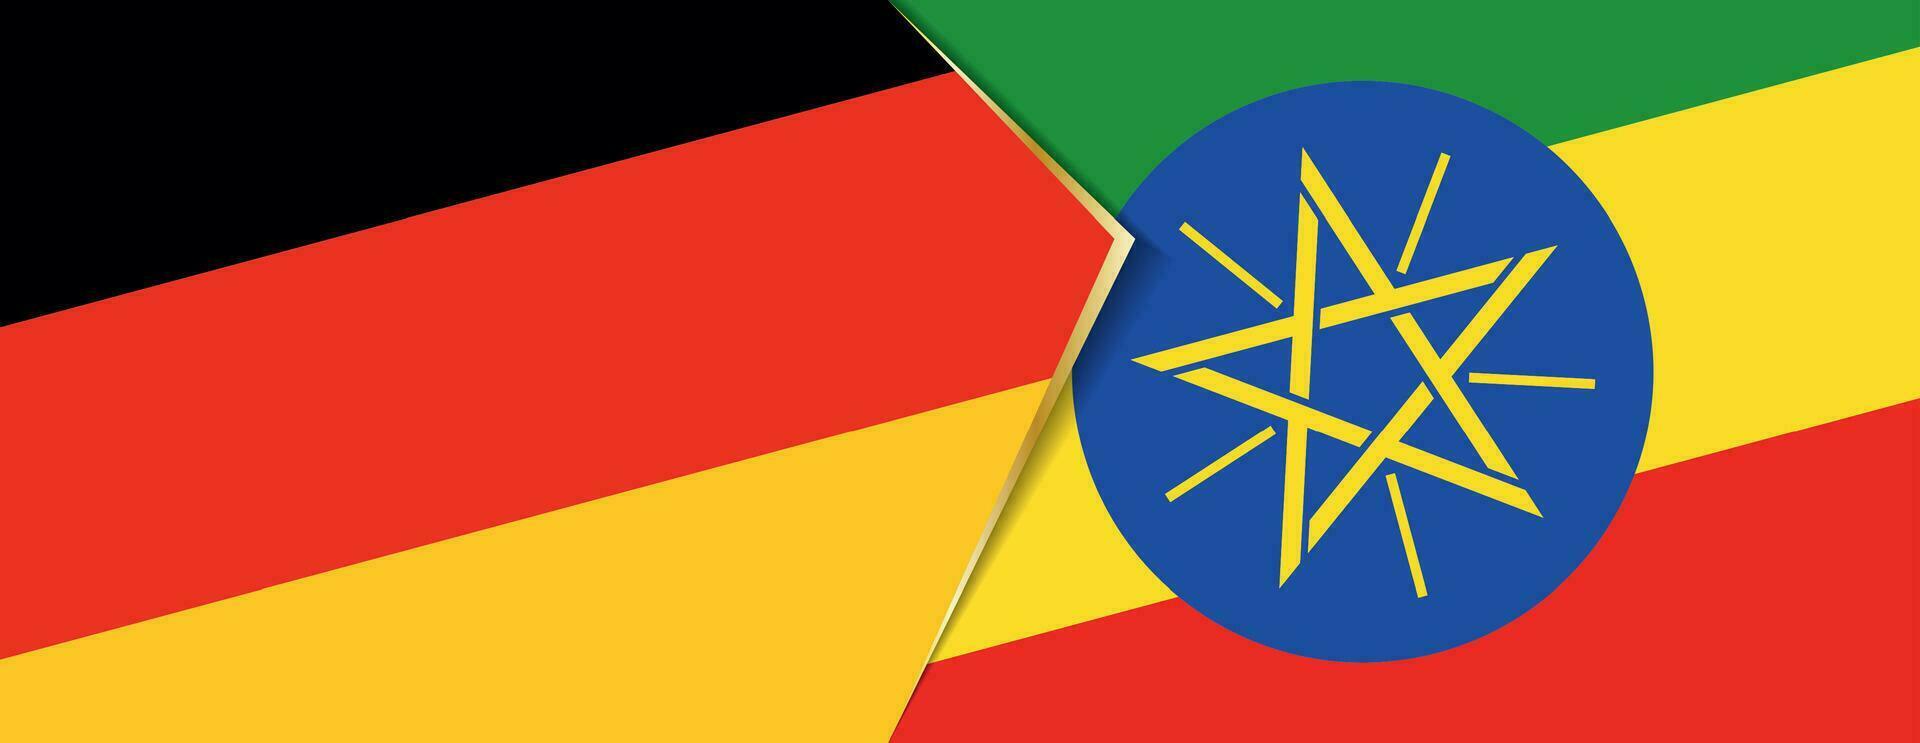 Tyskland och etiopien flaggor, två vektor flaggor.